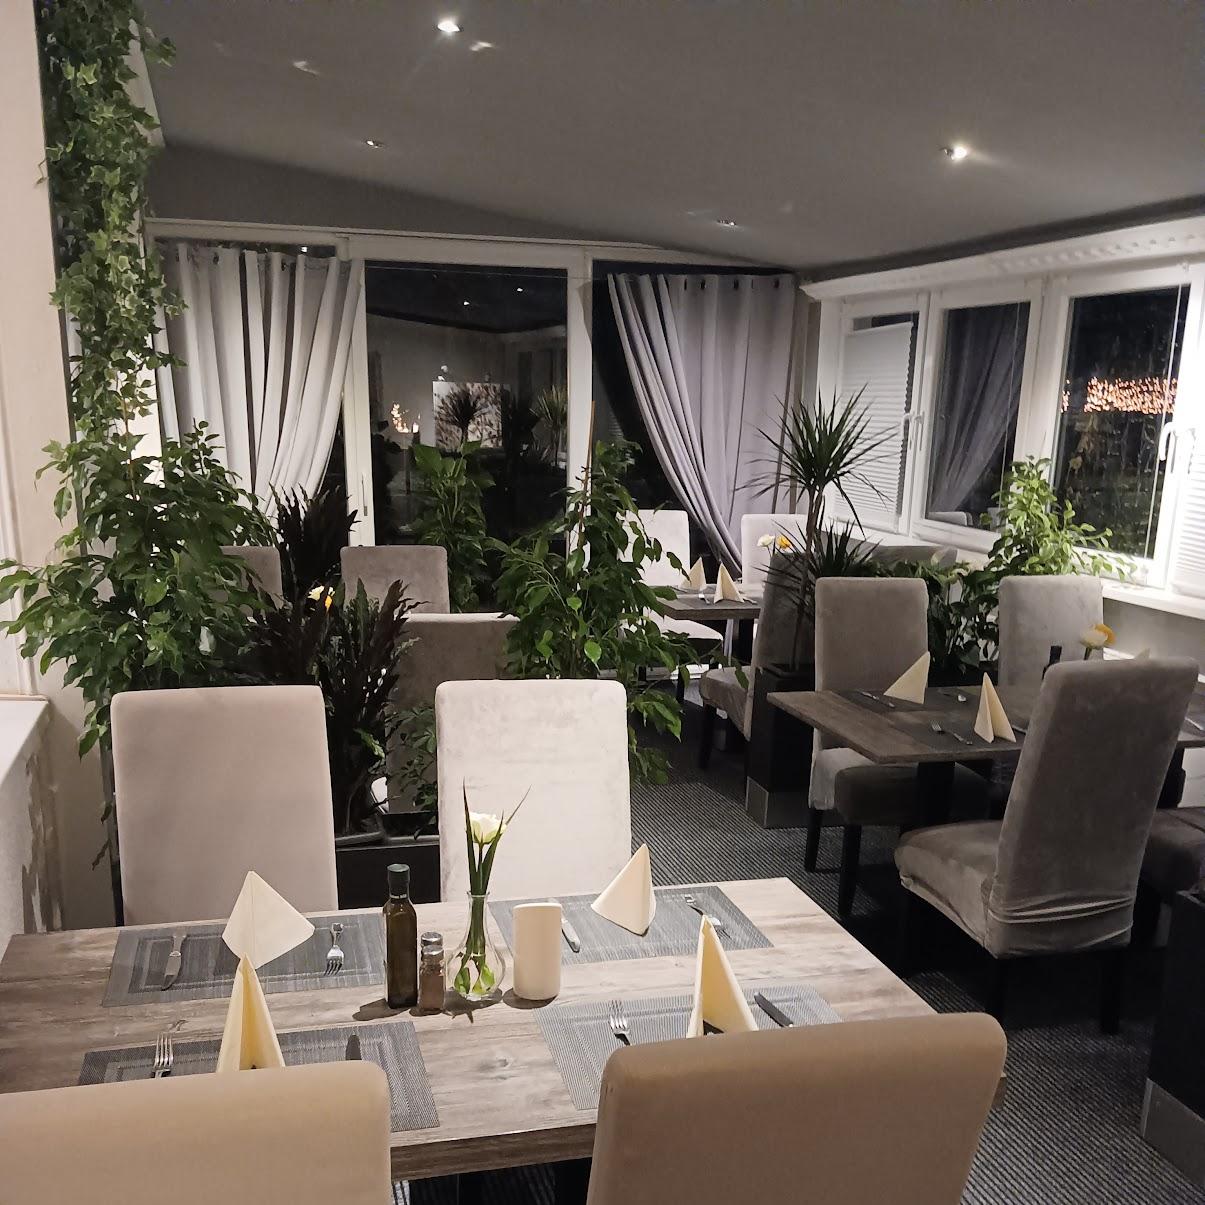 Restaurant "Restaurant Knossos" in Ludwigshafen am Rhein